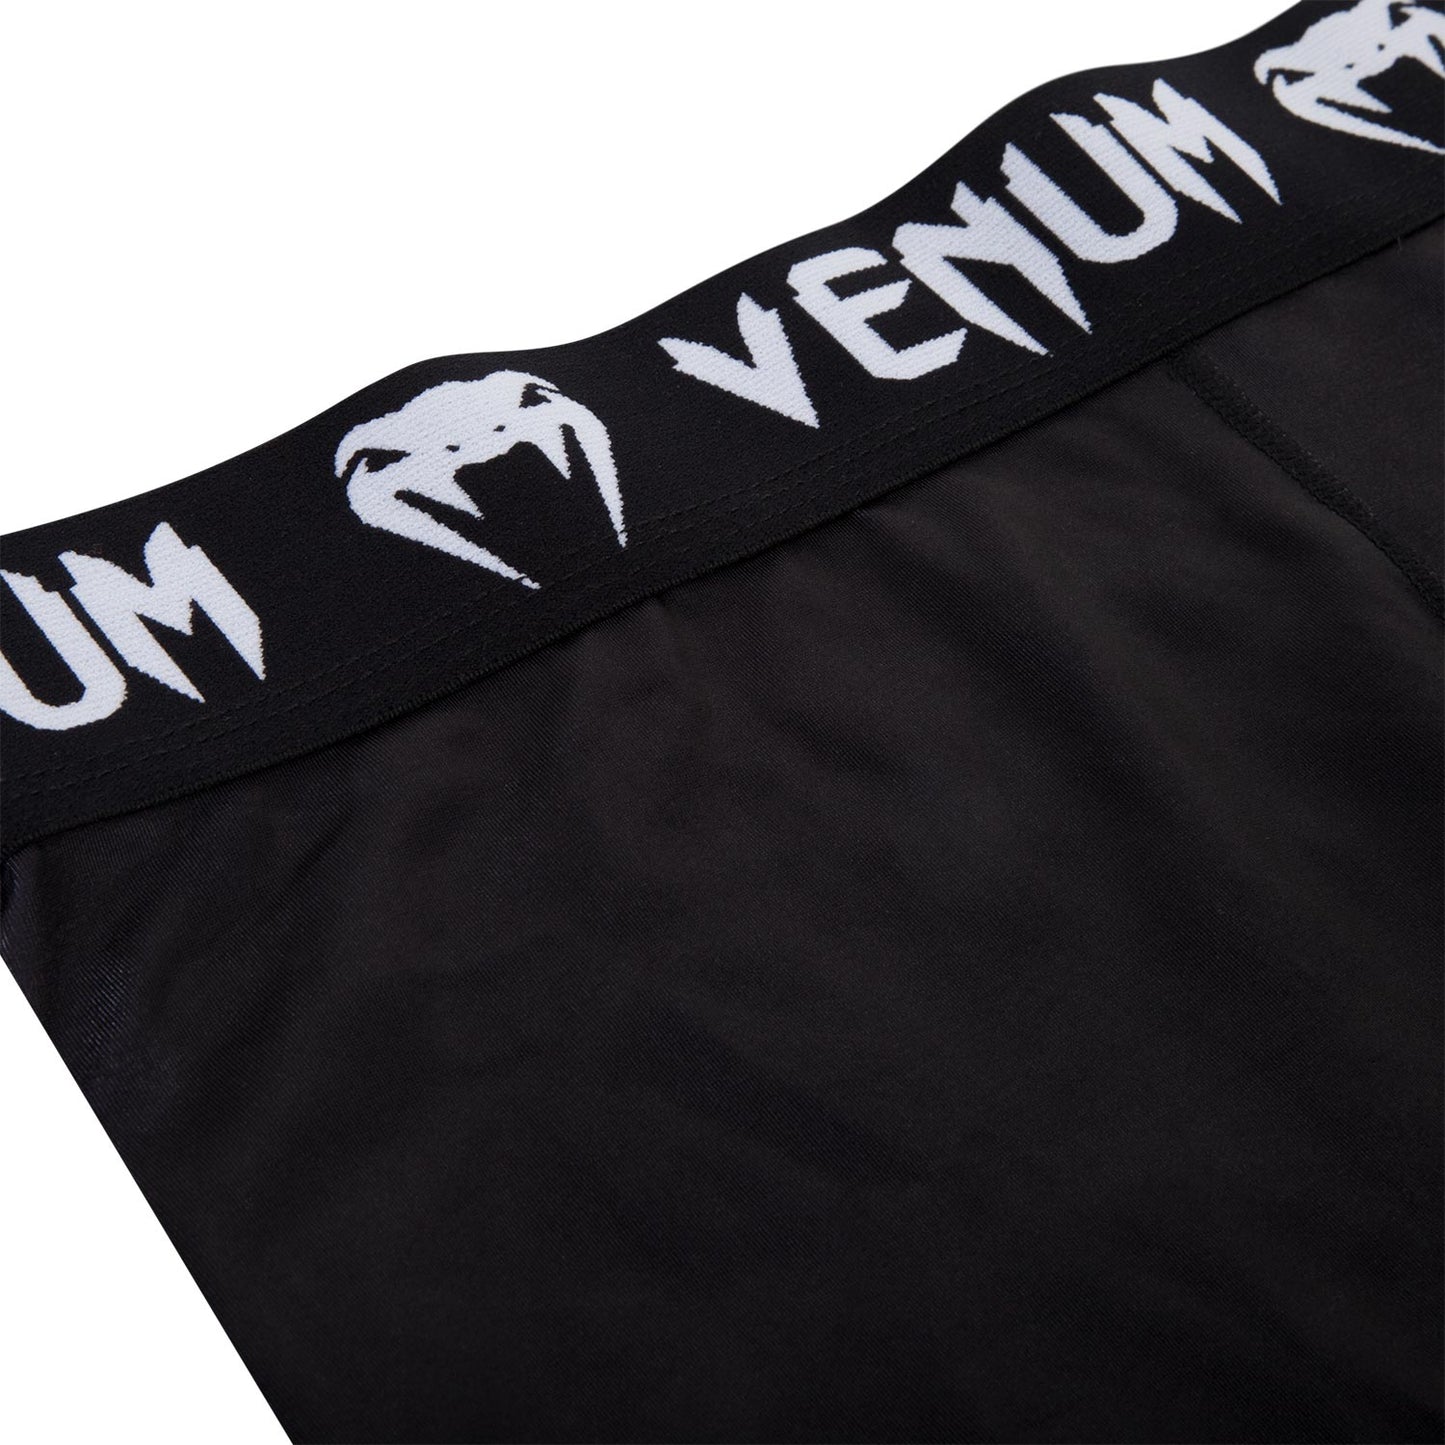 Pantalon de Compression Venum Giant - Noir/Ice